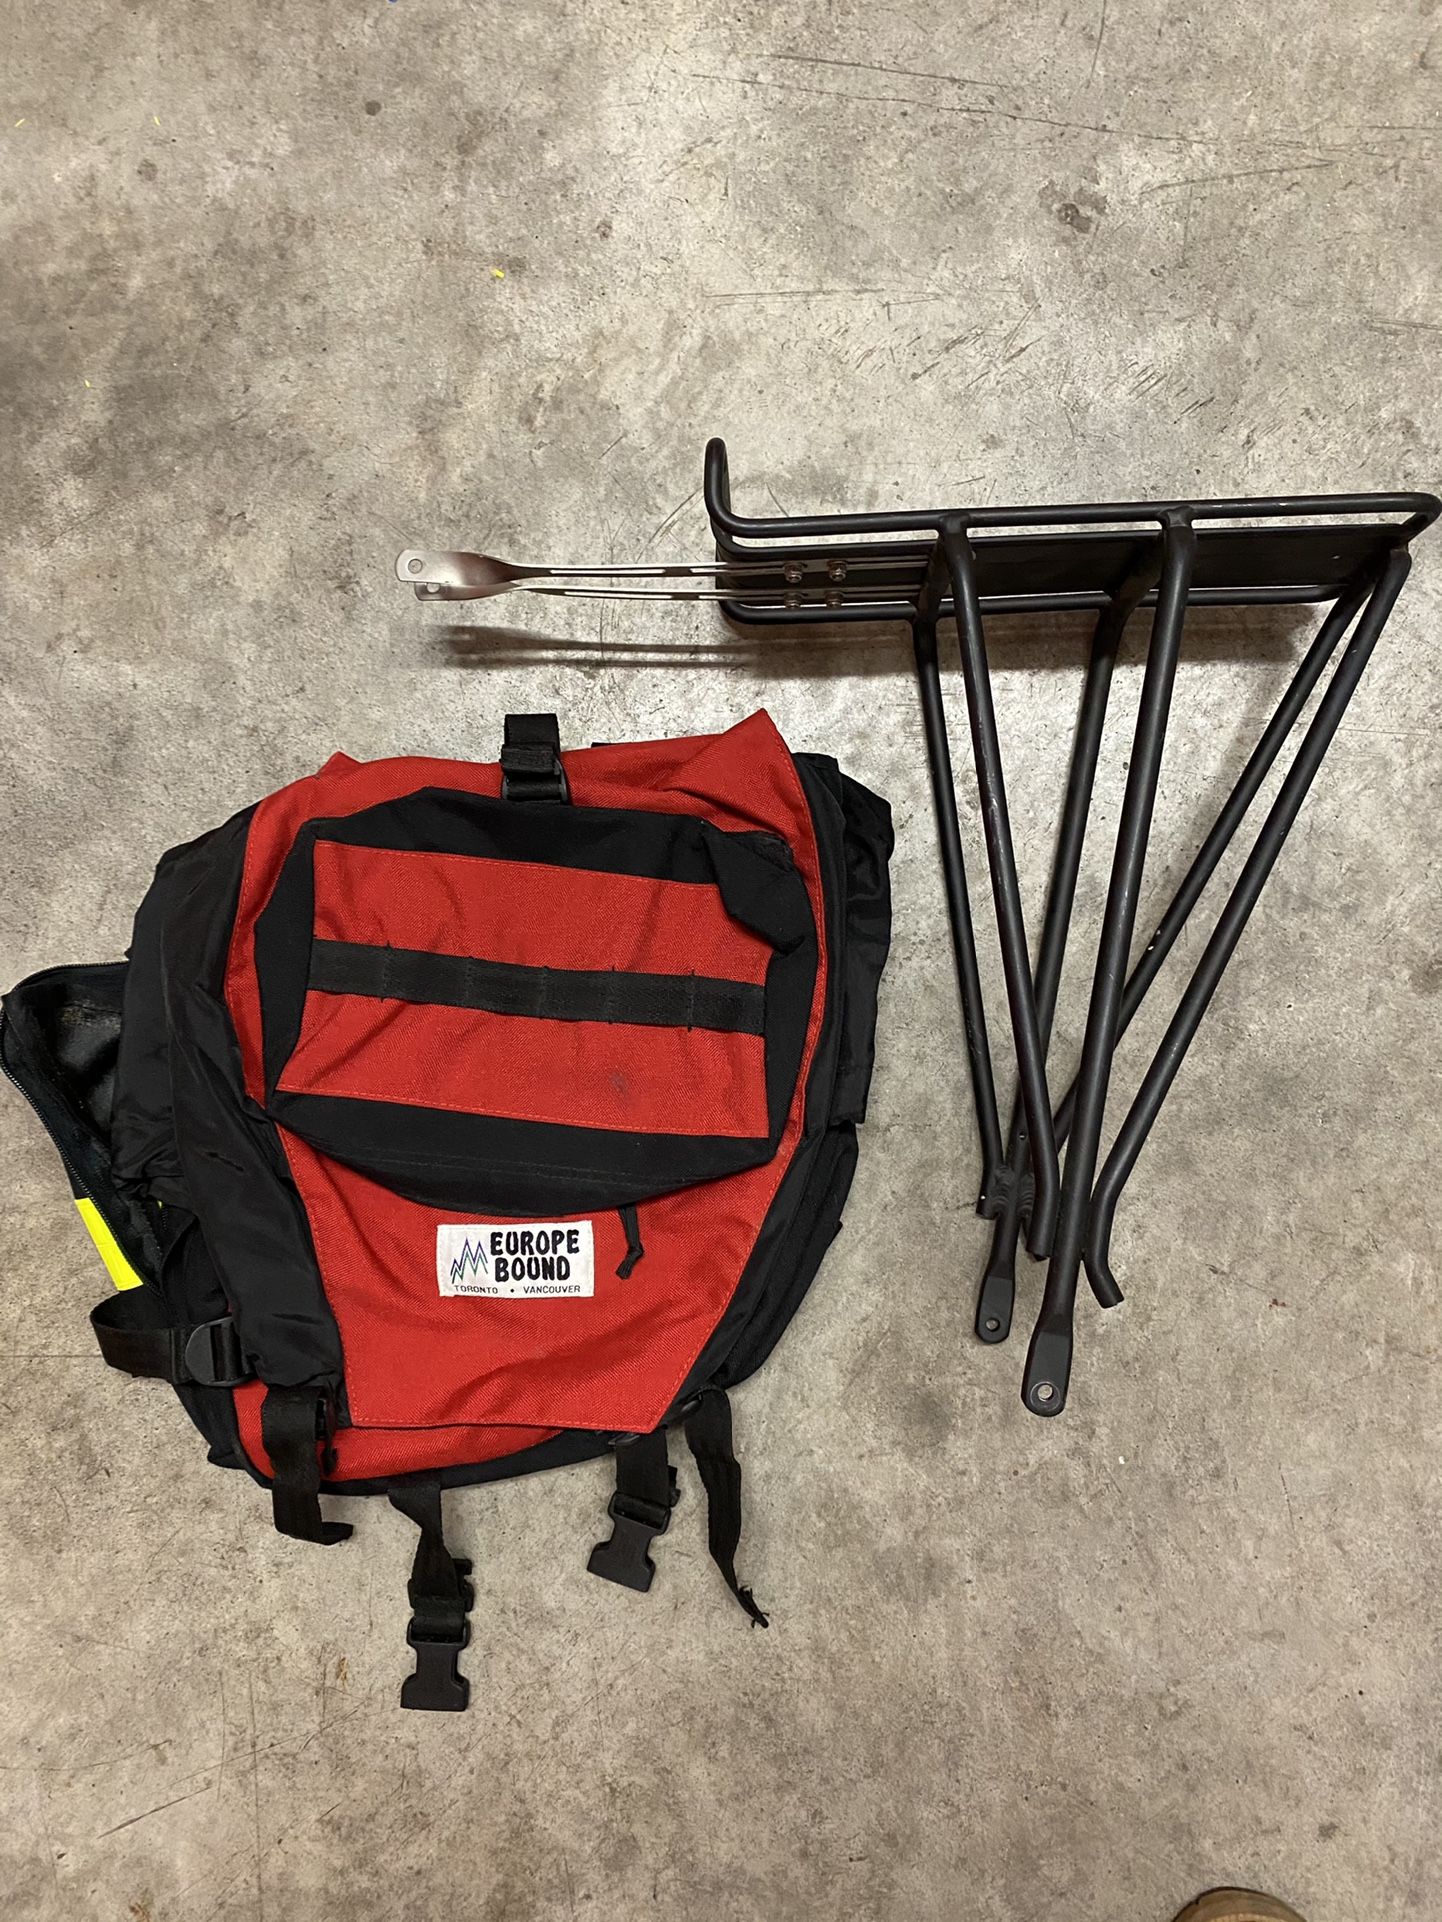 Bicycle Storage Bag And Rack Bundle 